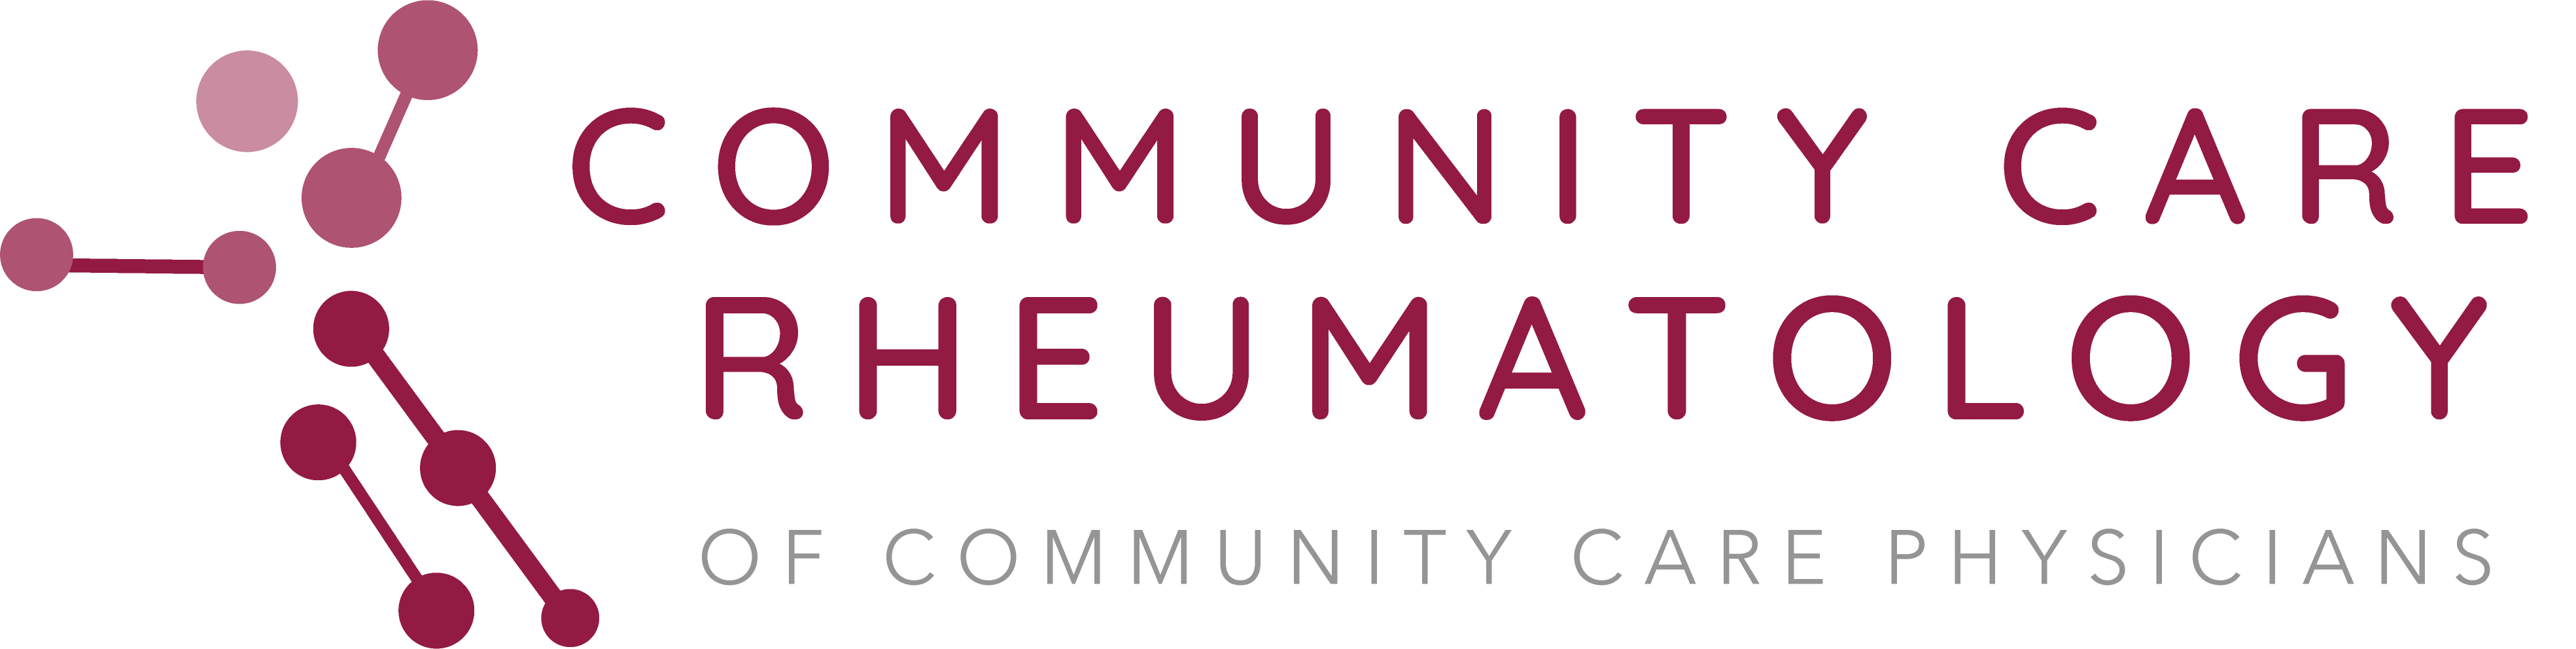 Community Care Rheumatology